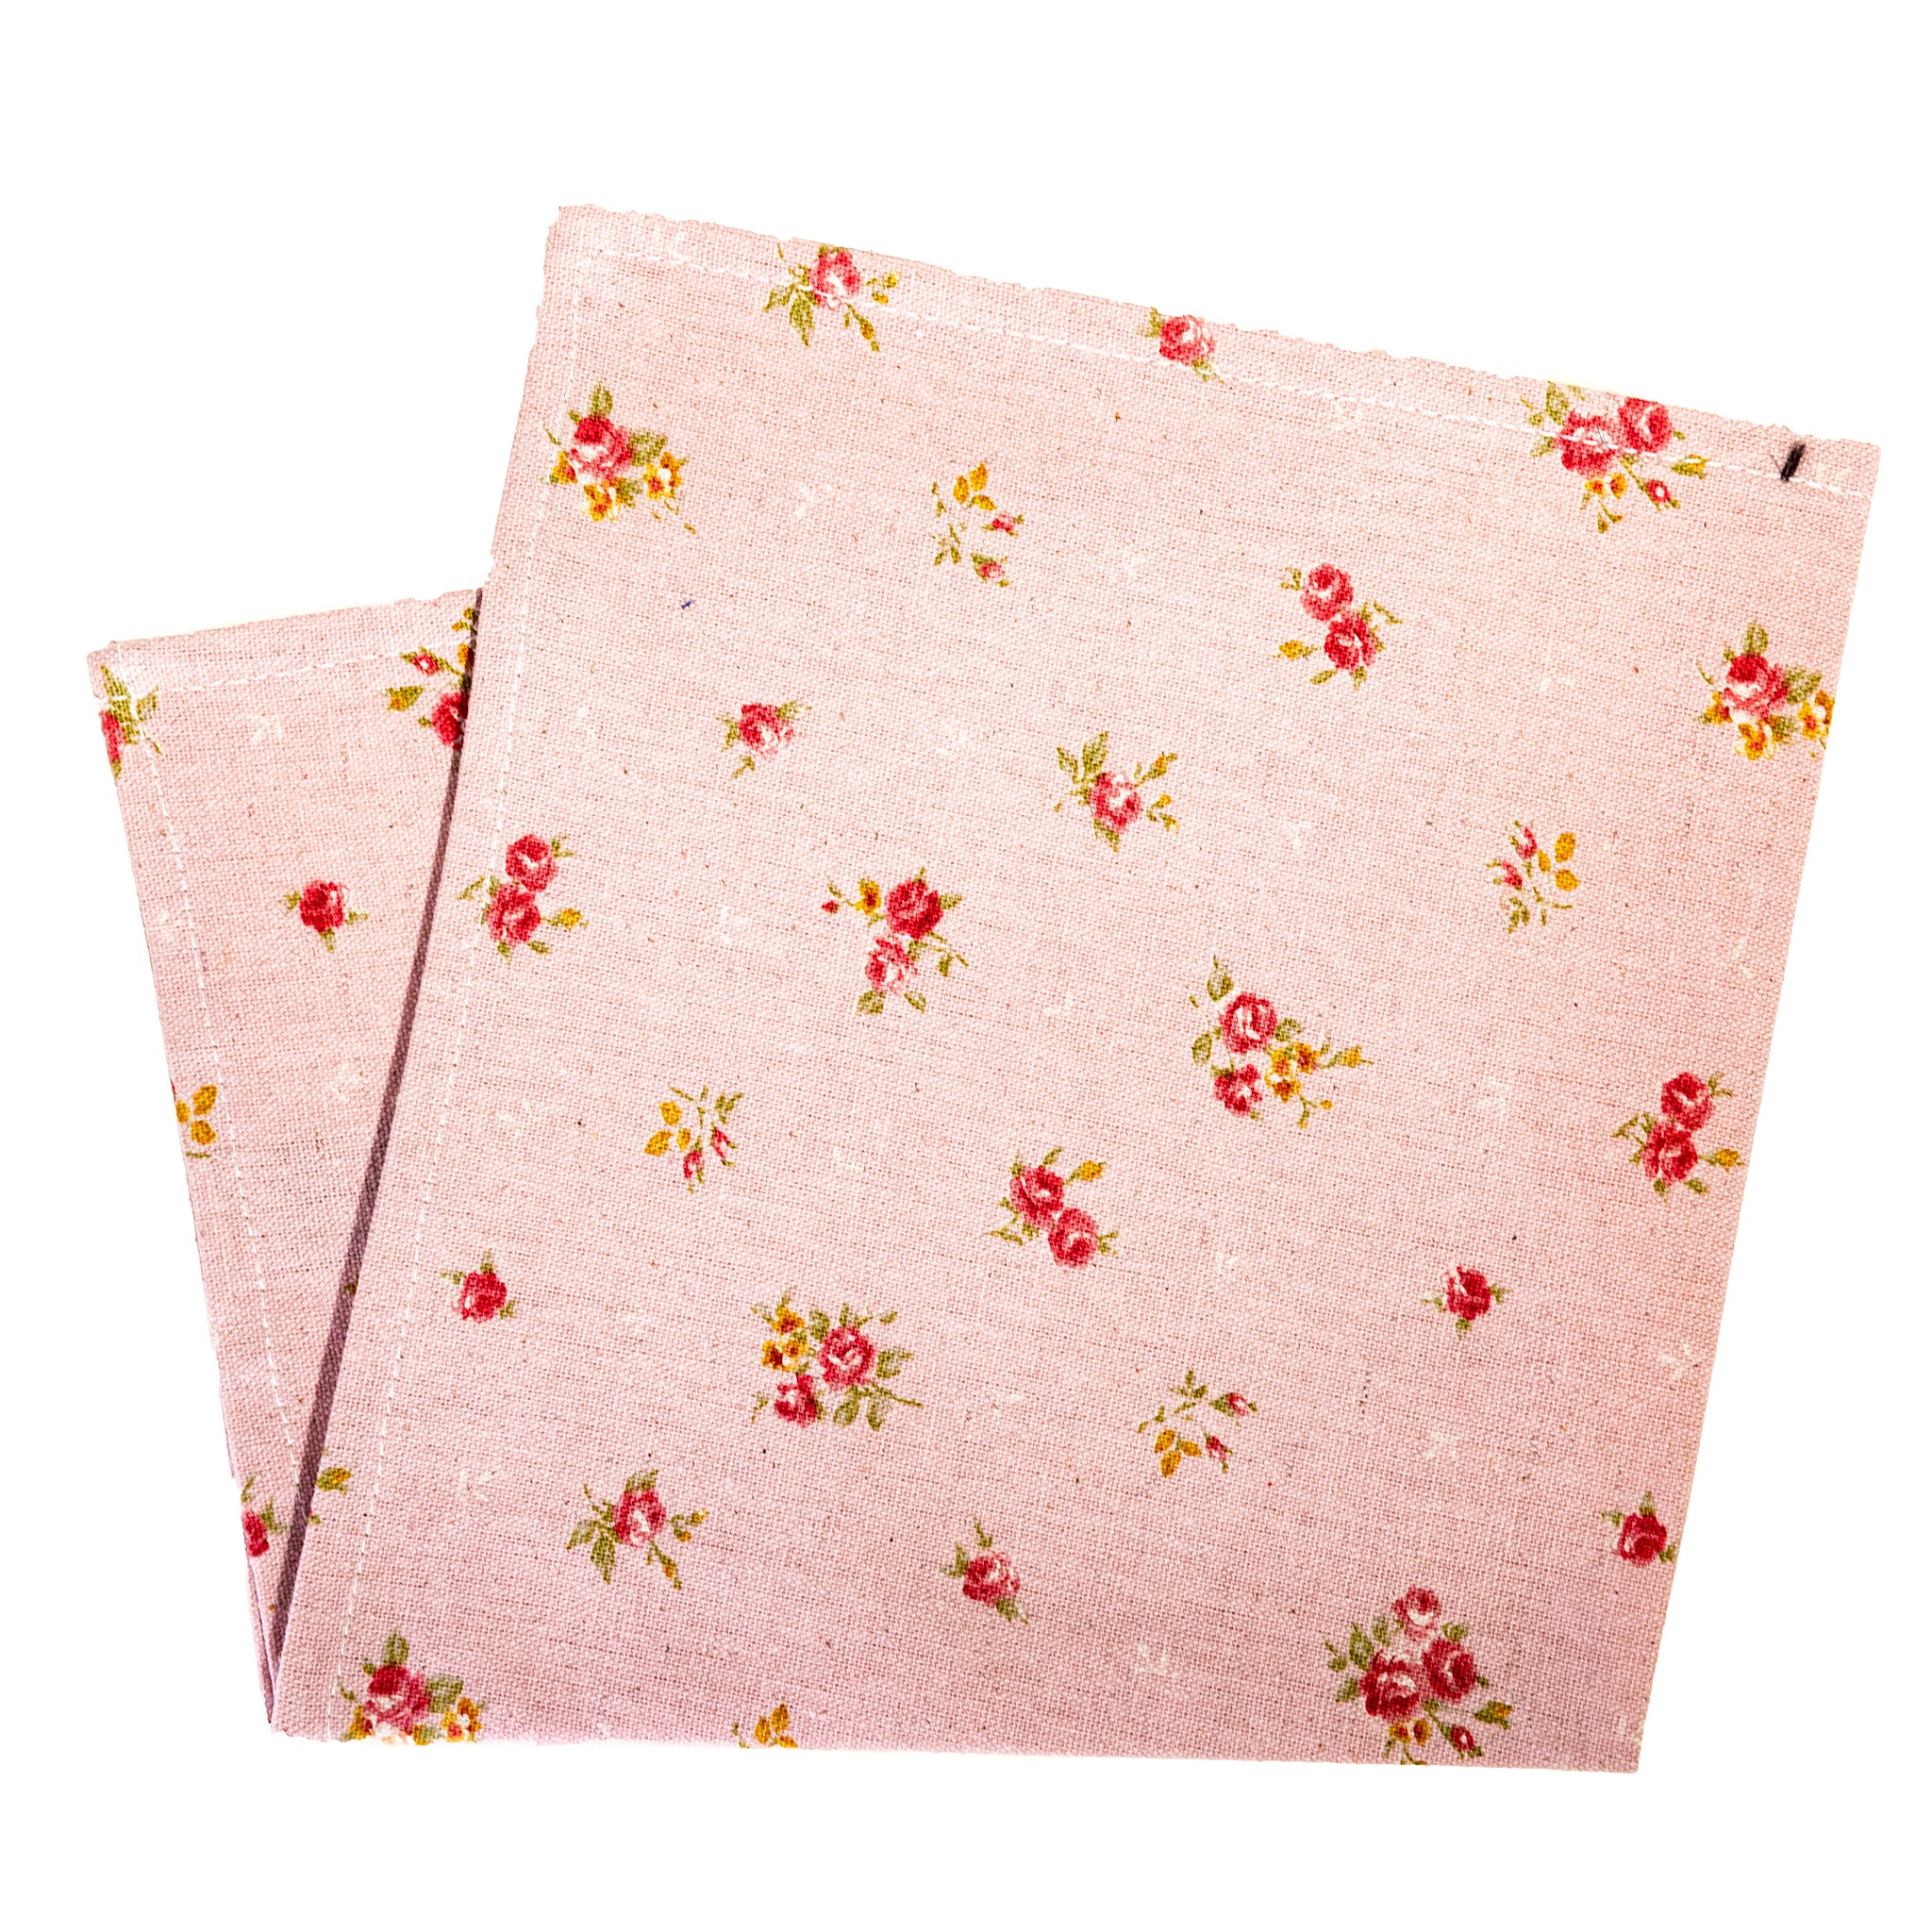 Japanese Floral Print on Rose Pocket Square